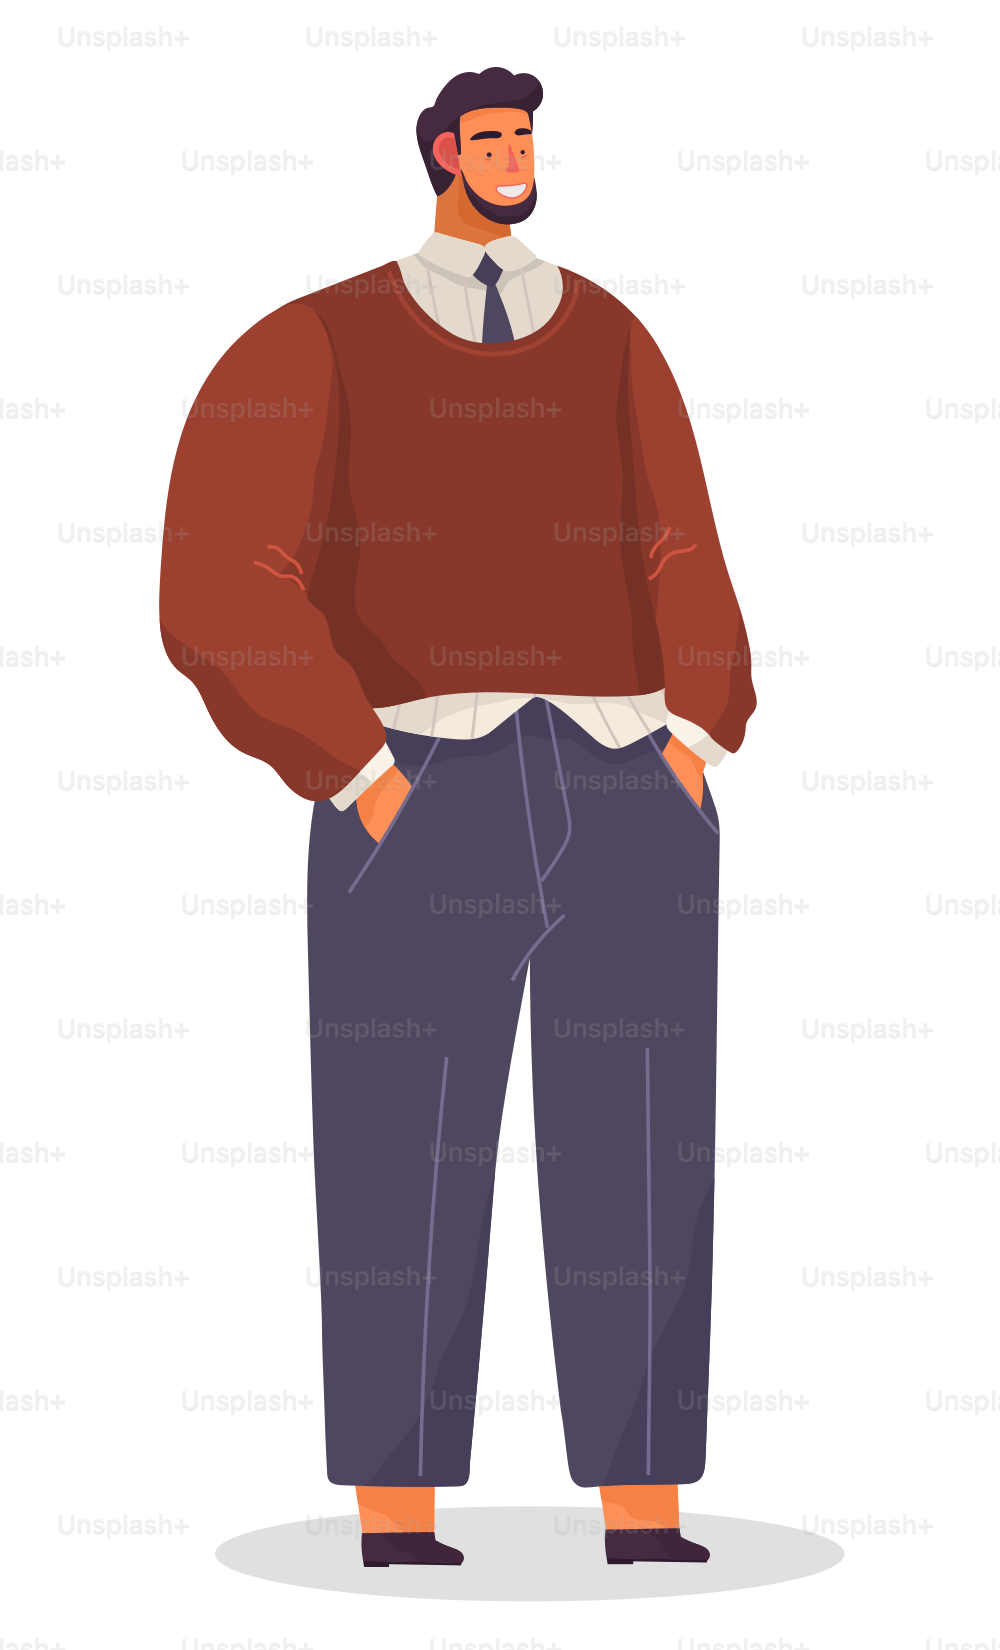 Retrato do homem de negócios, homem sorridente executivo vestindo suéter, camisa e gravata, calças, cara confiante alegre, personagem de desenho animado em estilo plano, elegante jovem trabalhador de escritório barbudo, avatar do empregado